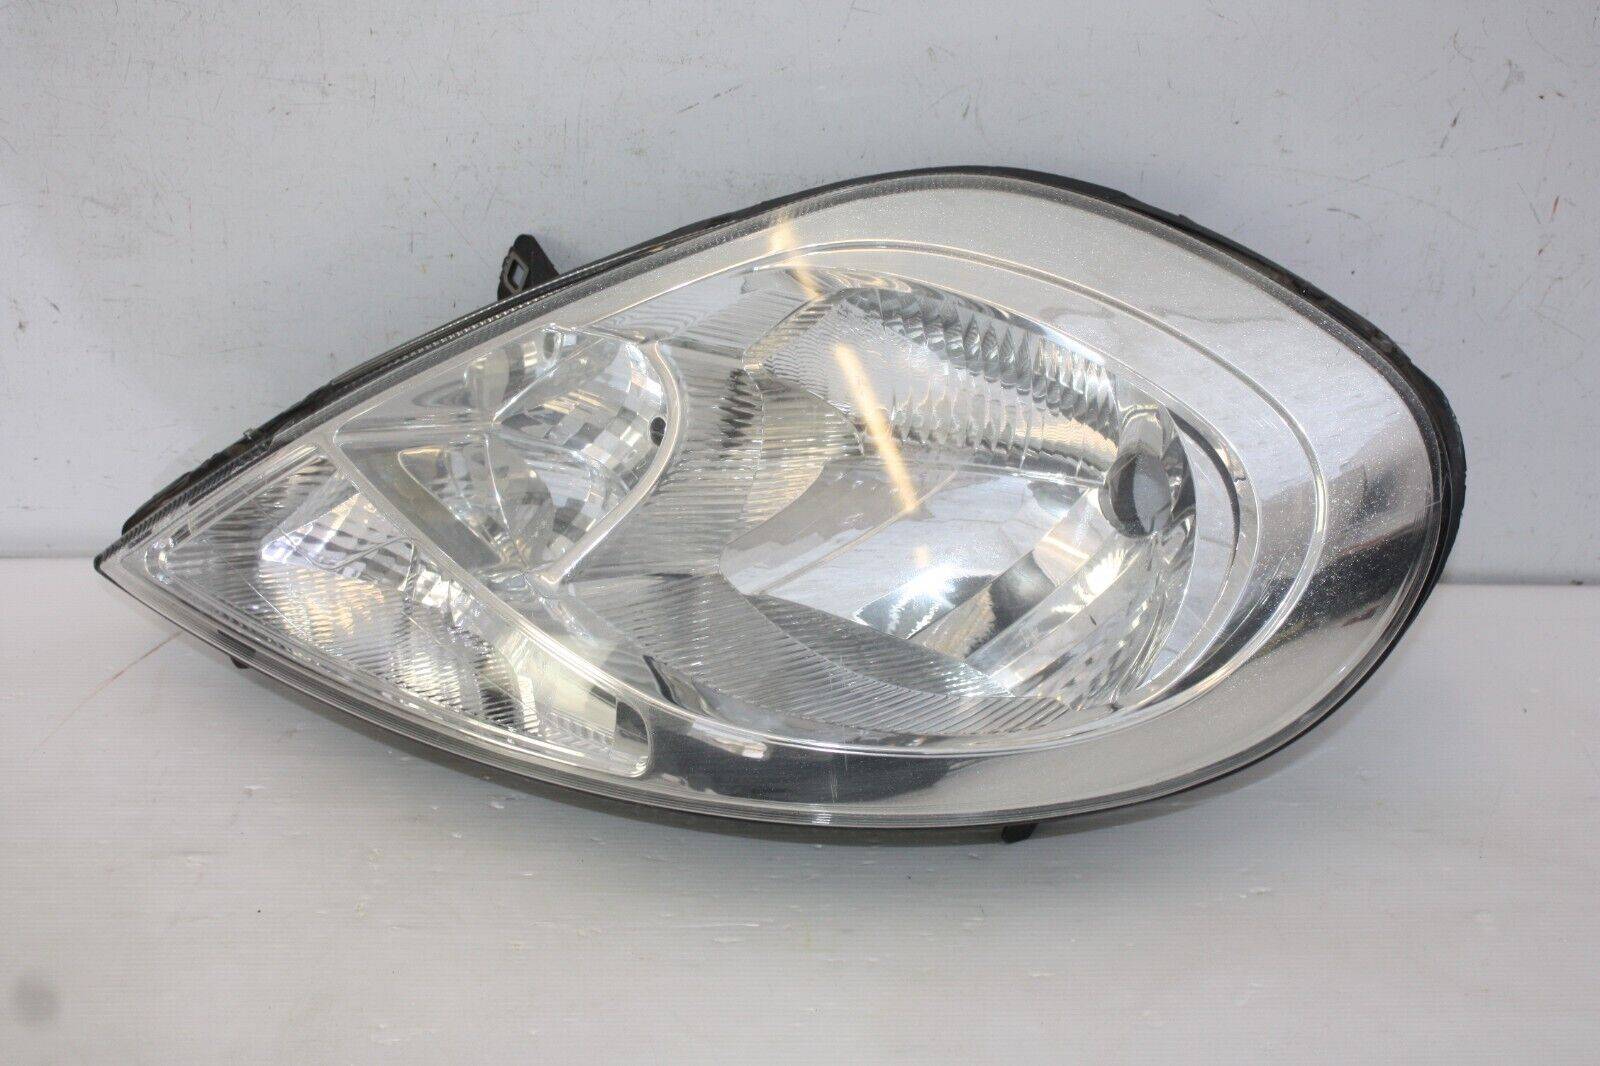 Vauxhall Vivaro Left Side Headlight 2007 TO 2014 93859833 Genuine 175495458905